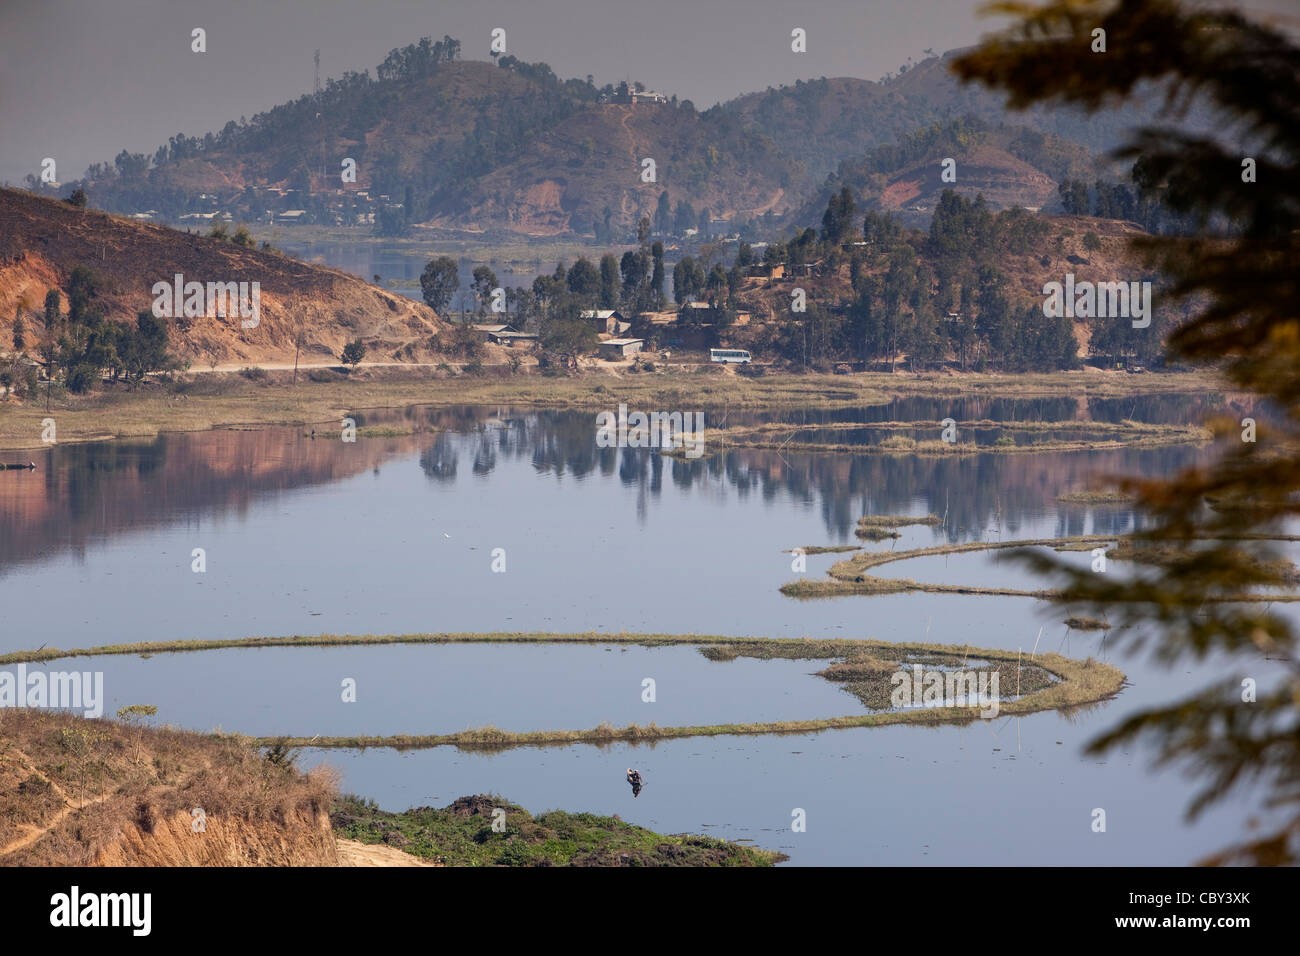 Indien, Manipur, Imphal, Loktak See aus militärischer Sicht Sendra Insel Stockfoto